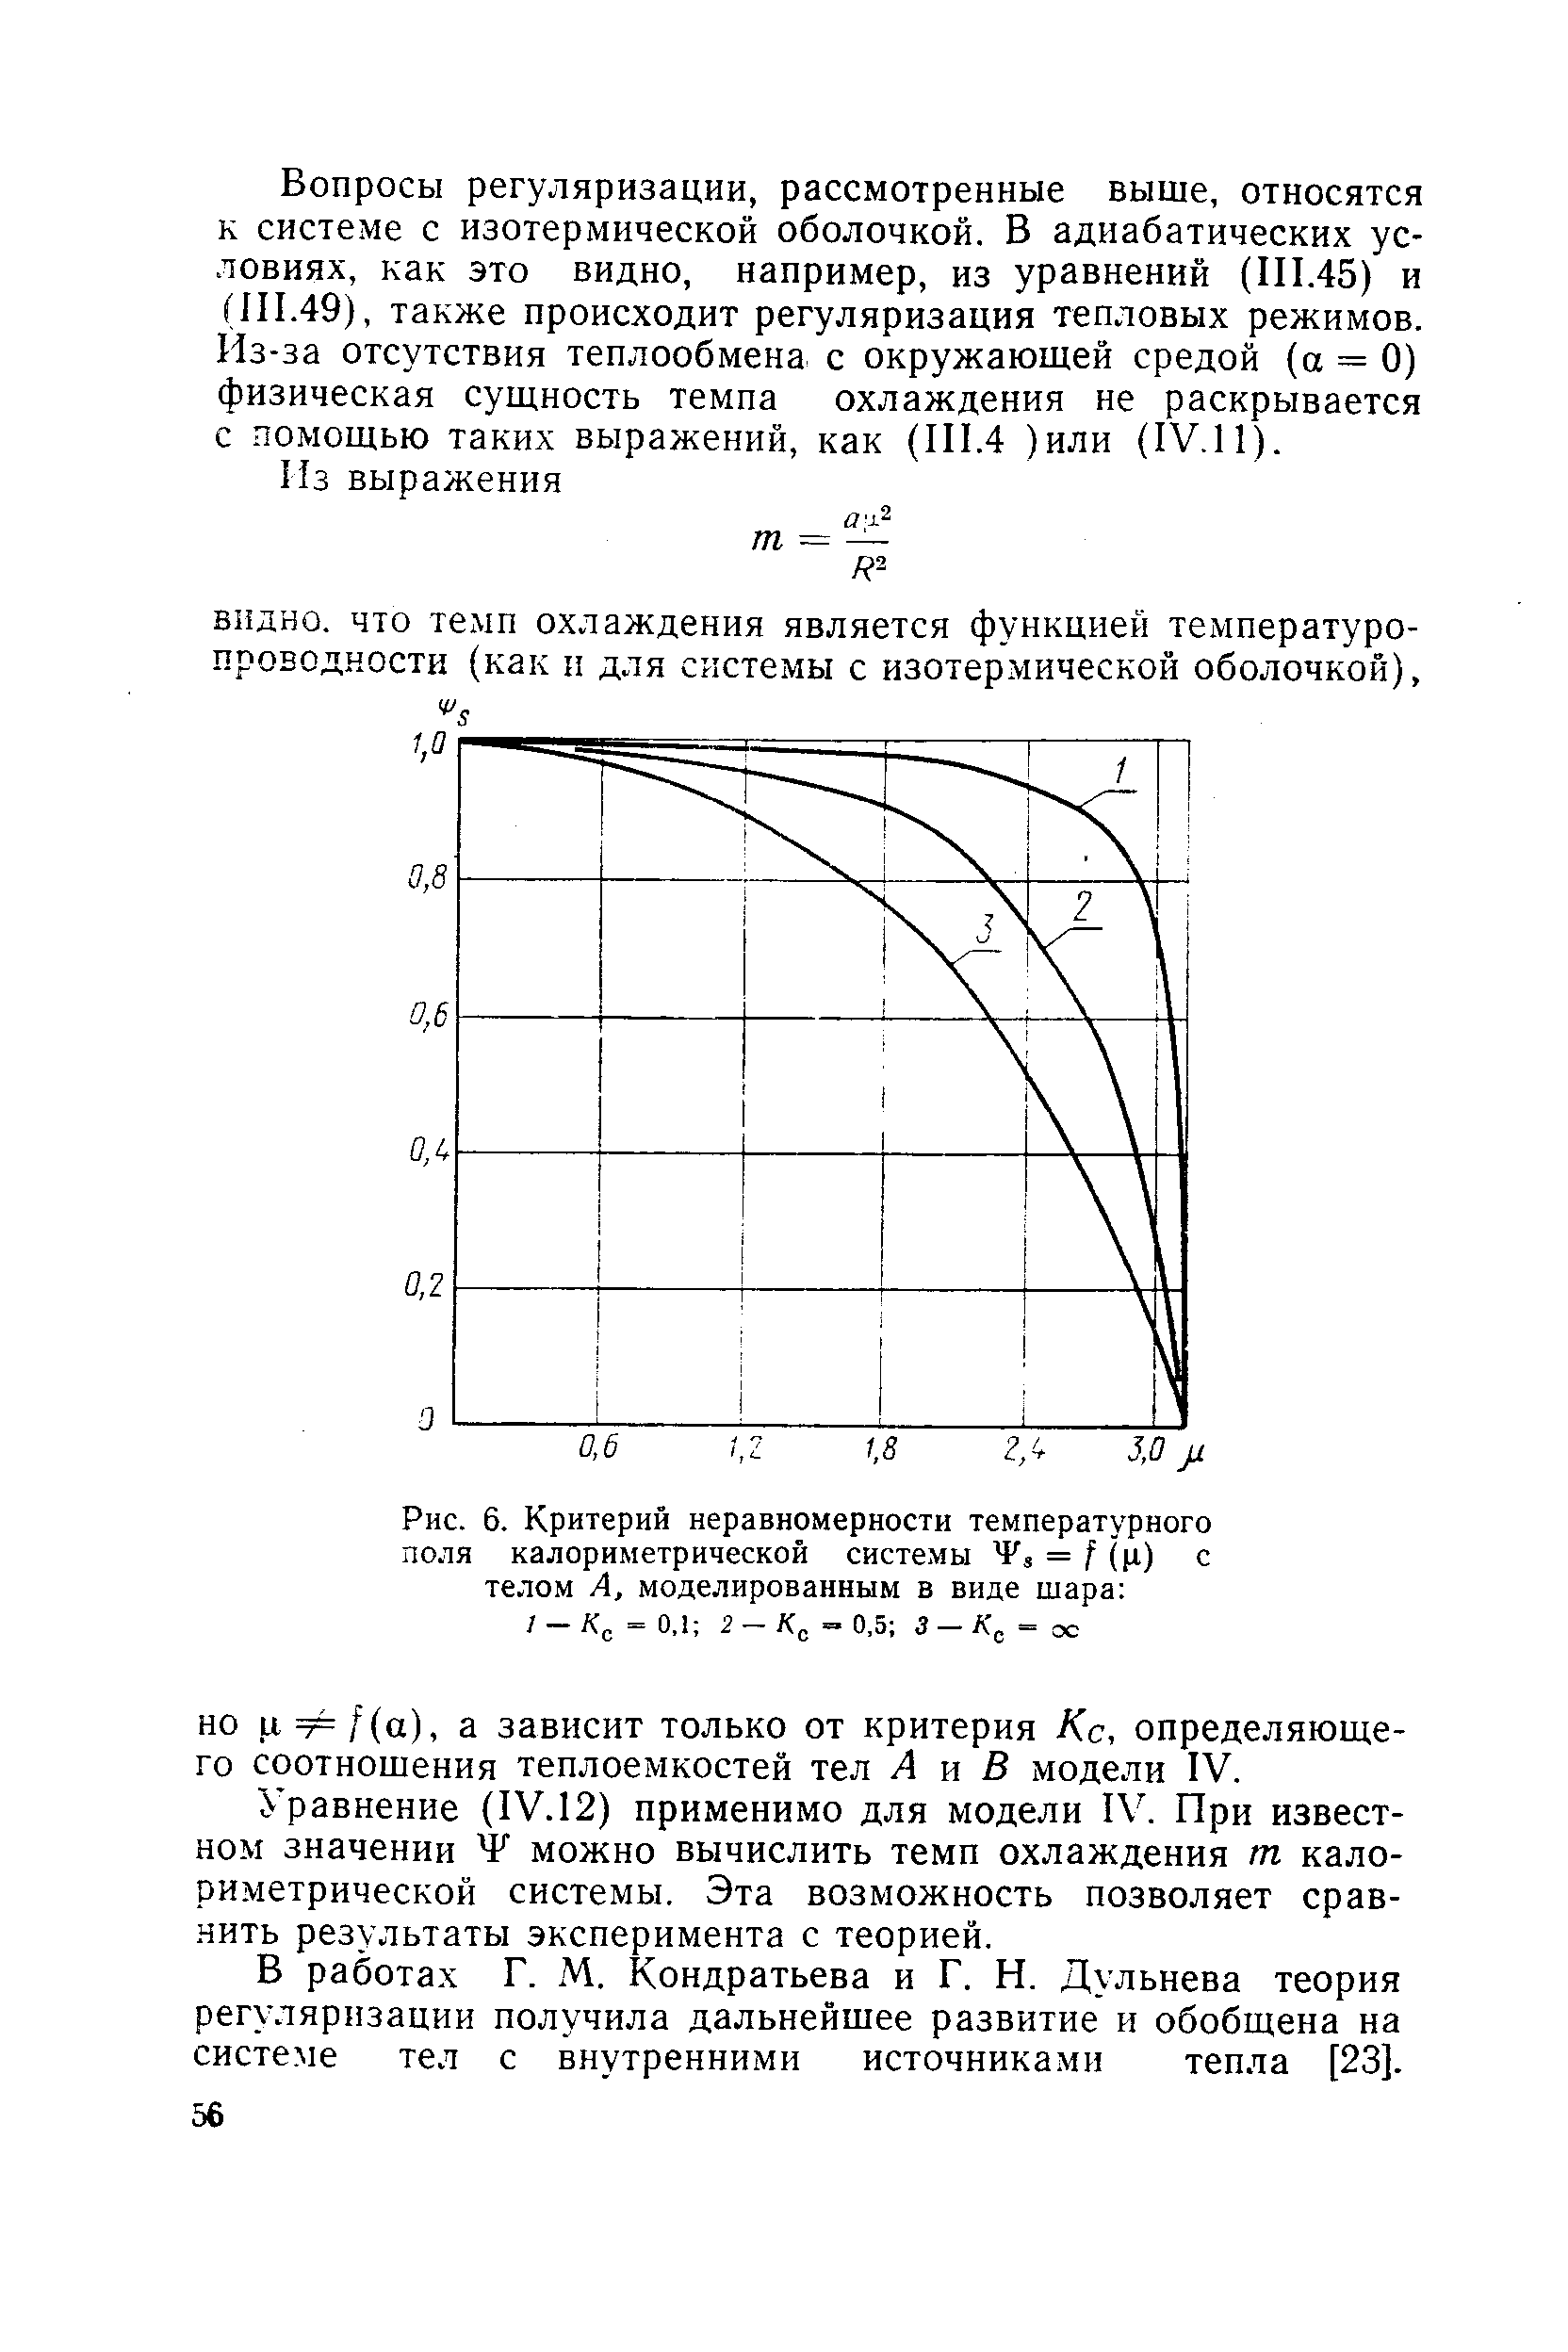 Рис. 6. Критерий неравномерности температурного поля калориметрической системы = f (ц) с телом А, моделированным в виде шара 
